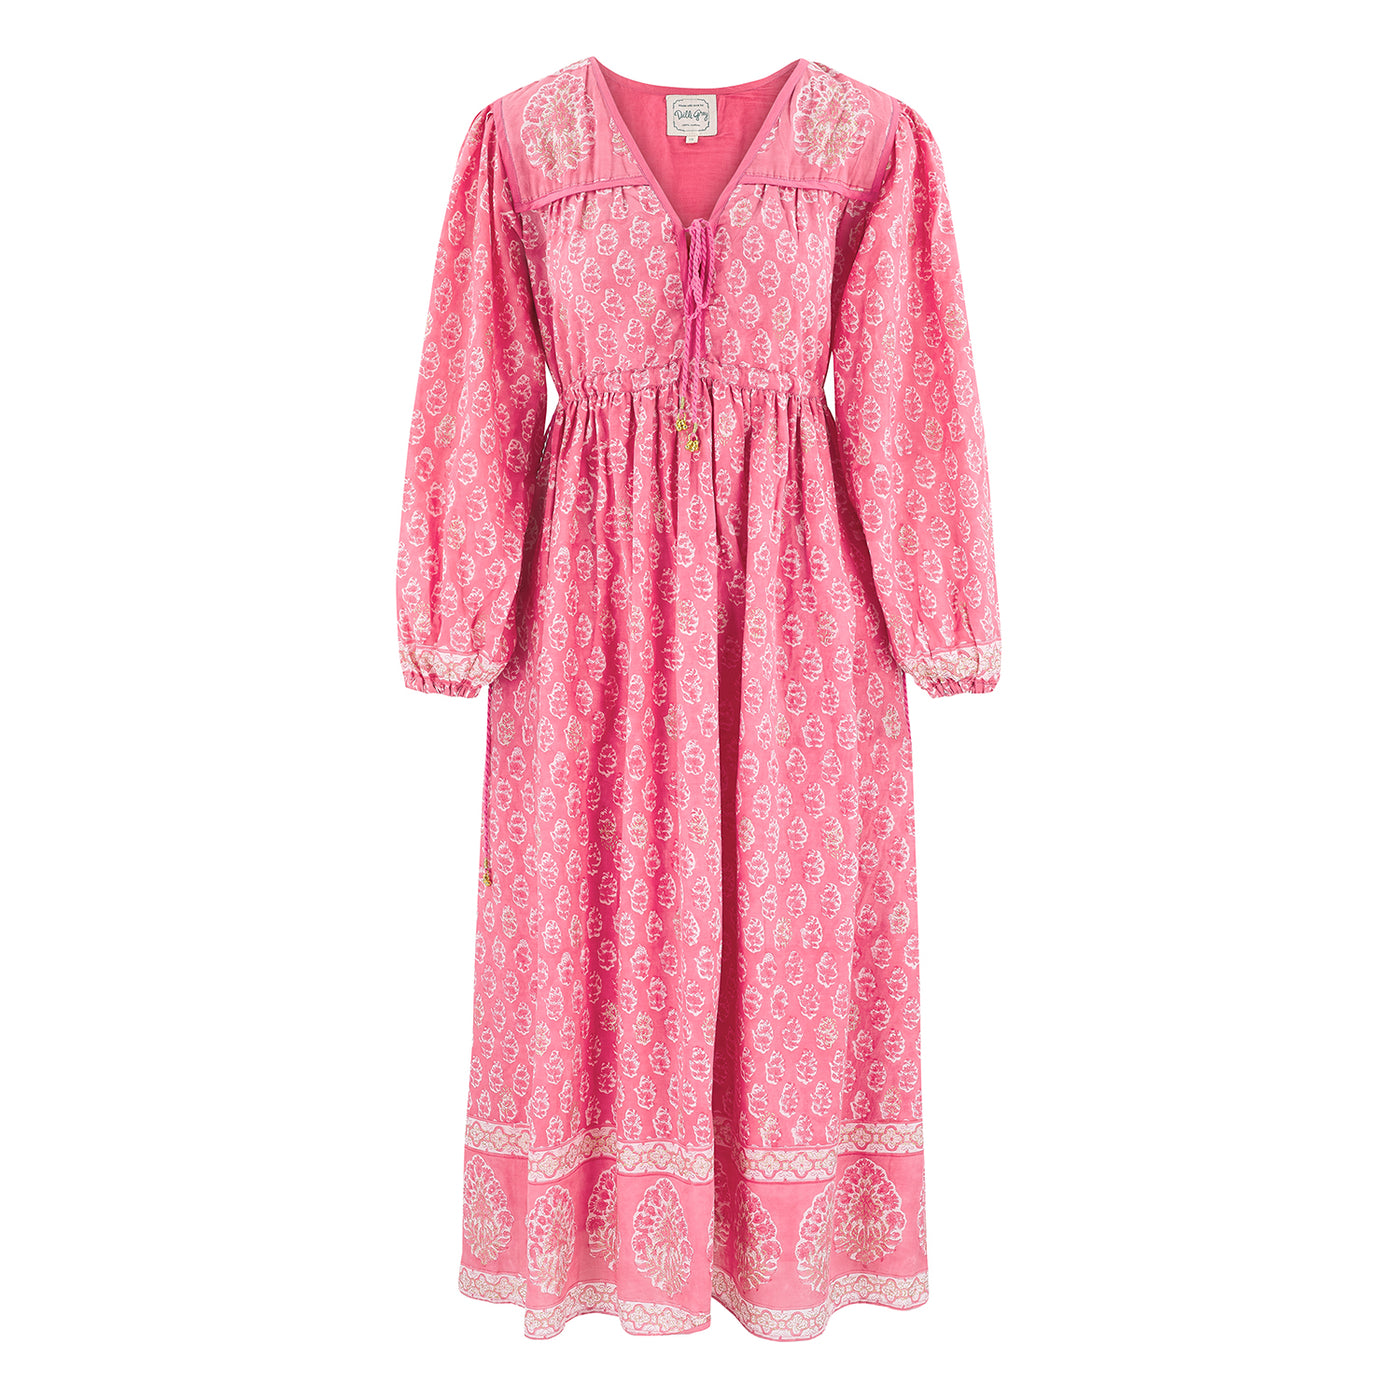 Fifi midi dress in dusty pink